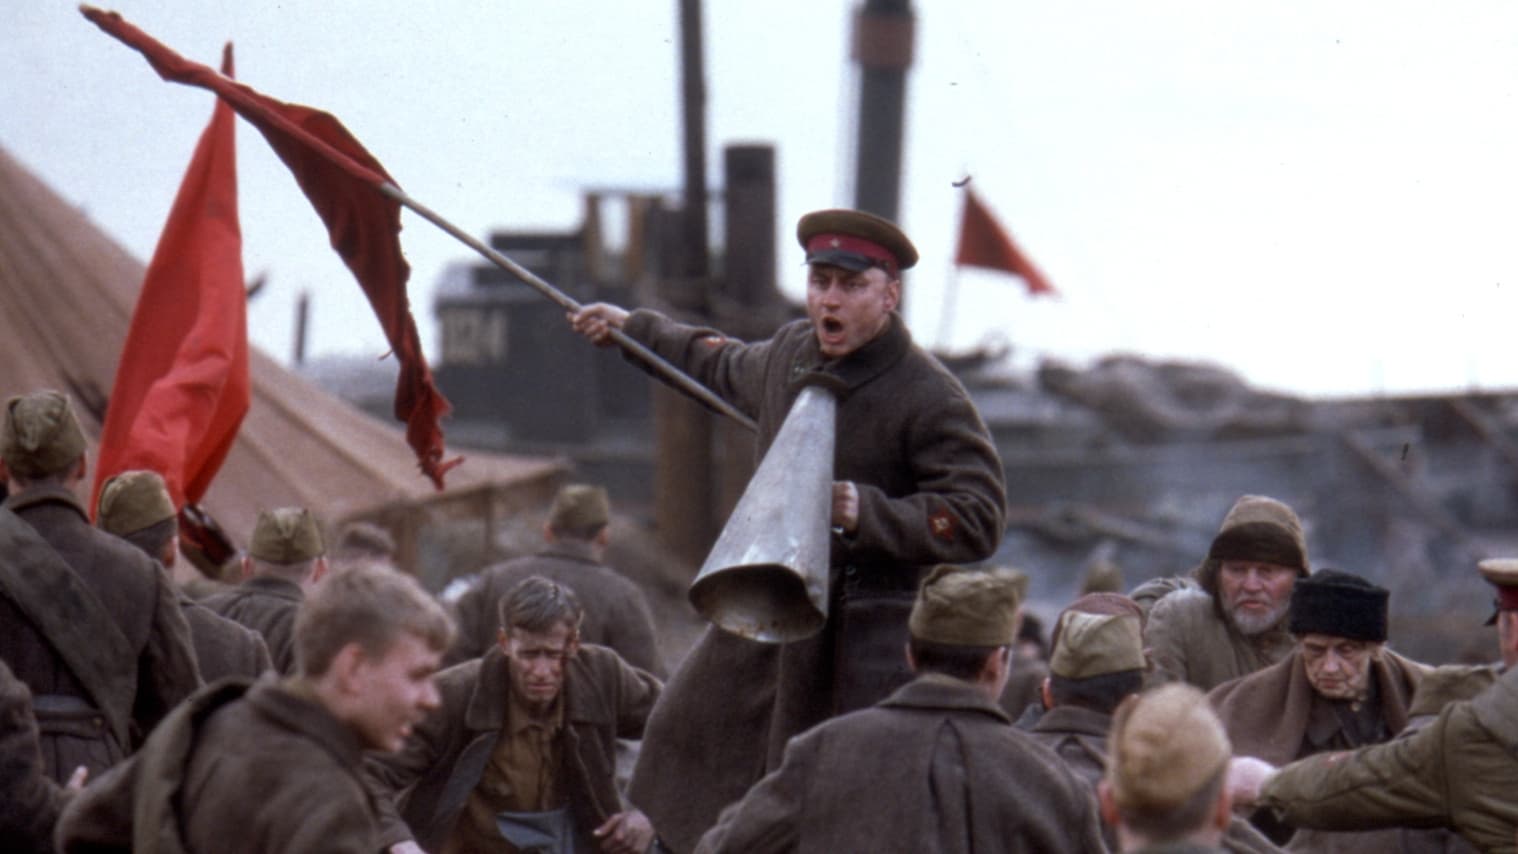 Image du film Stalingrad mrpt9cpjjvacguhpcilhtrchhybjpg